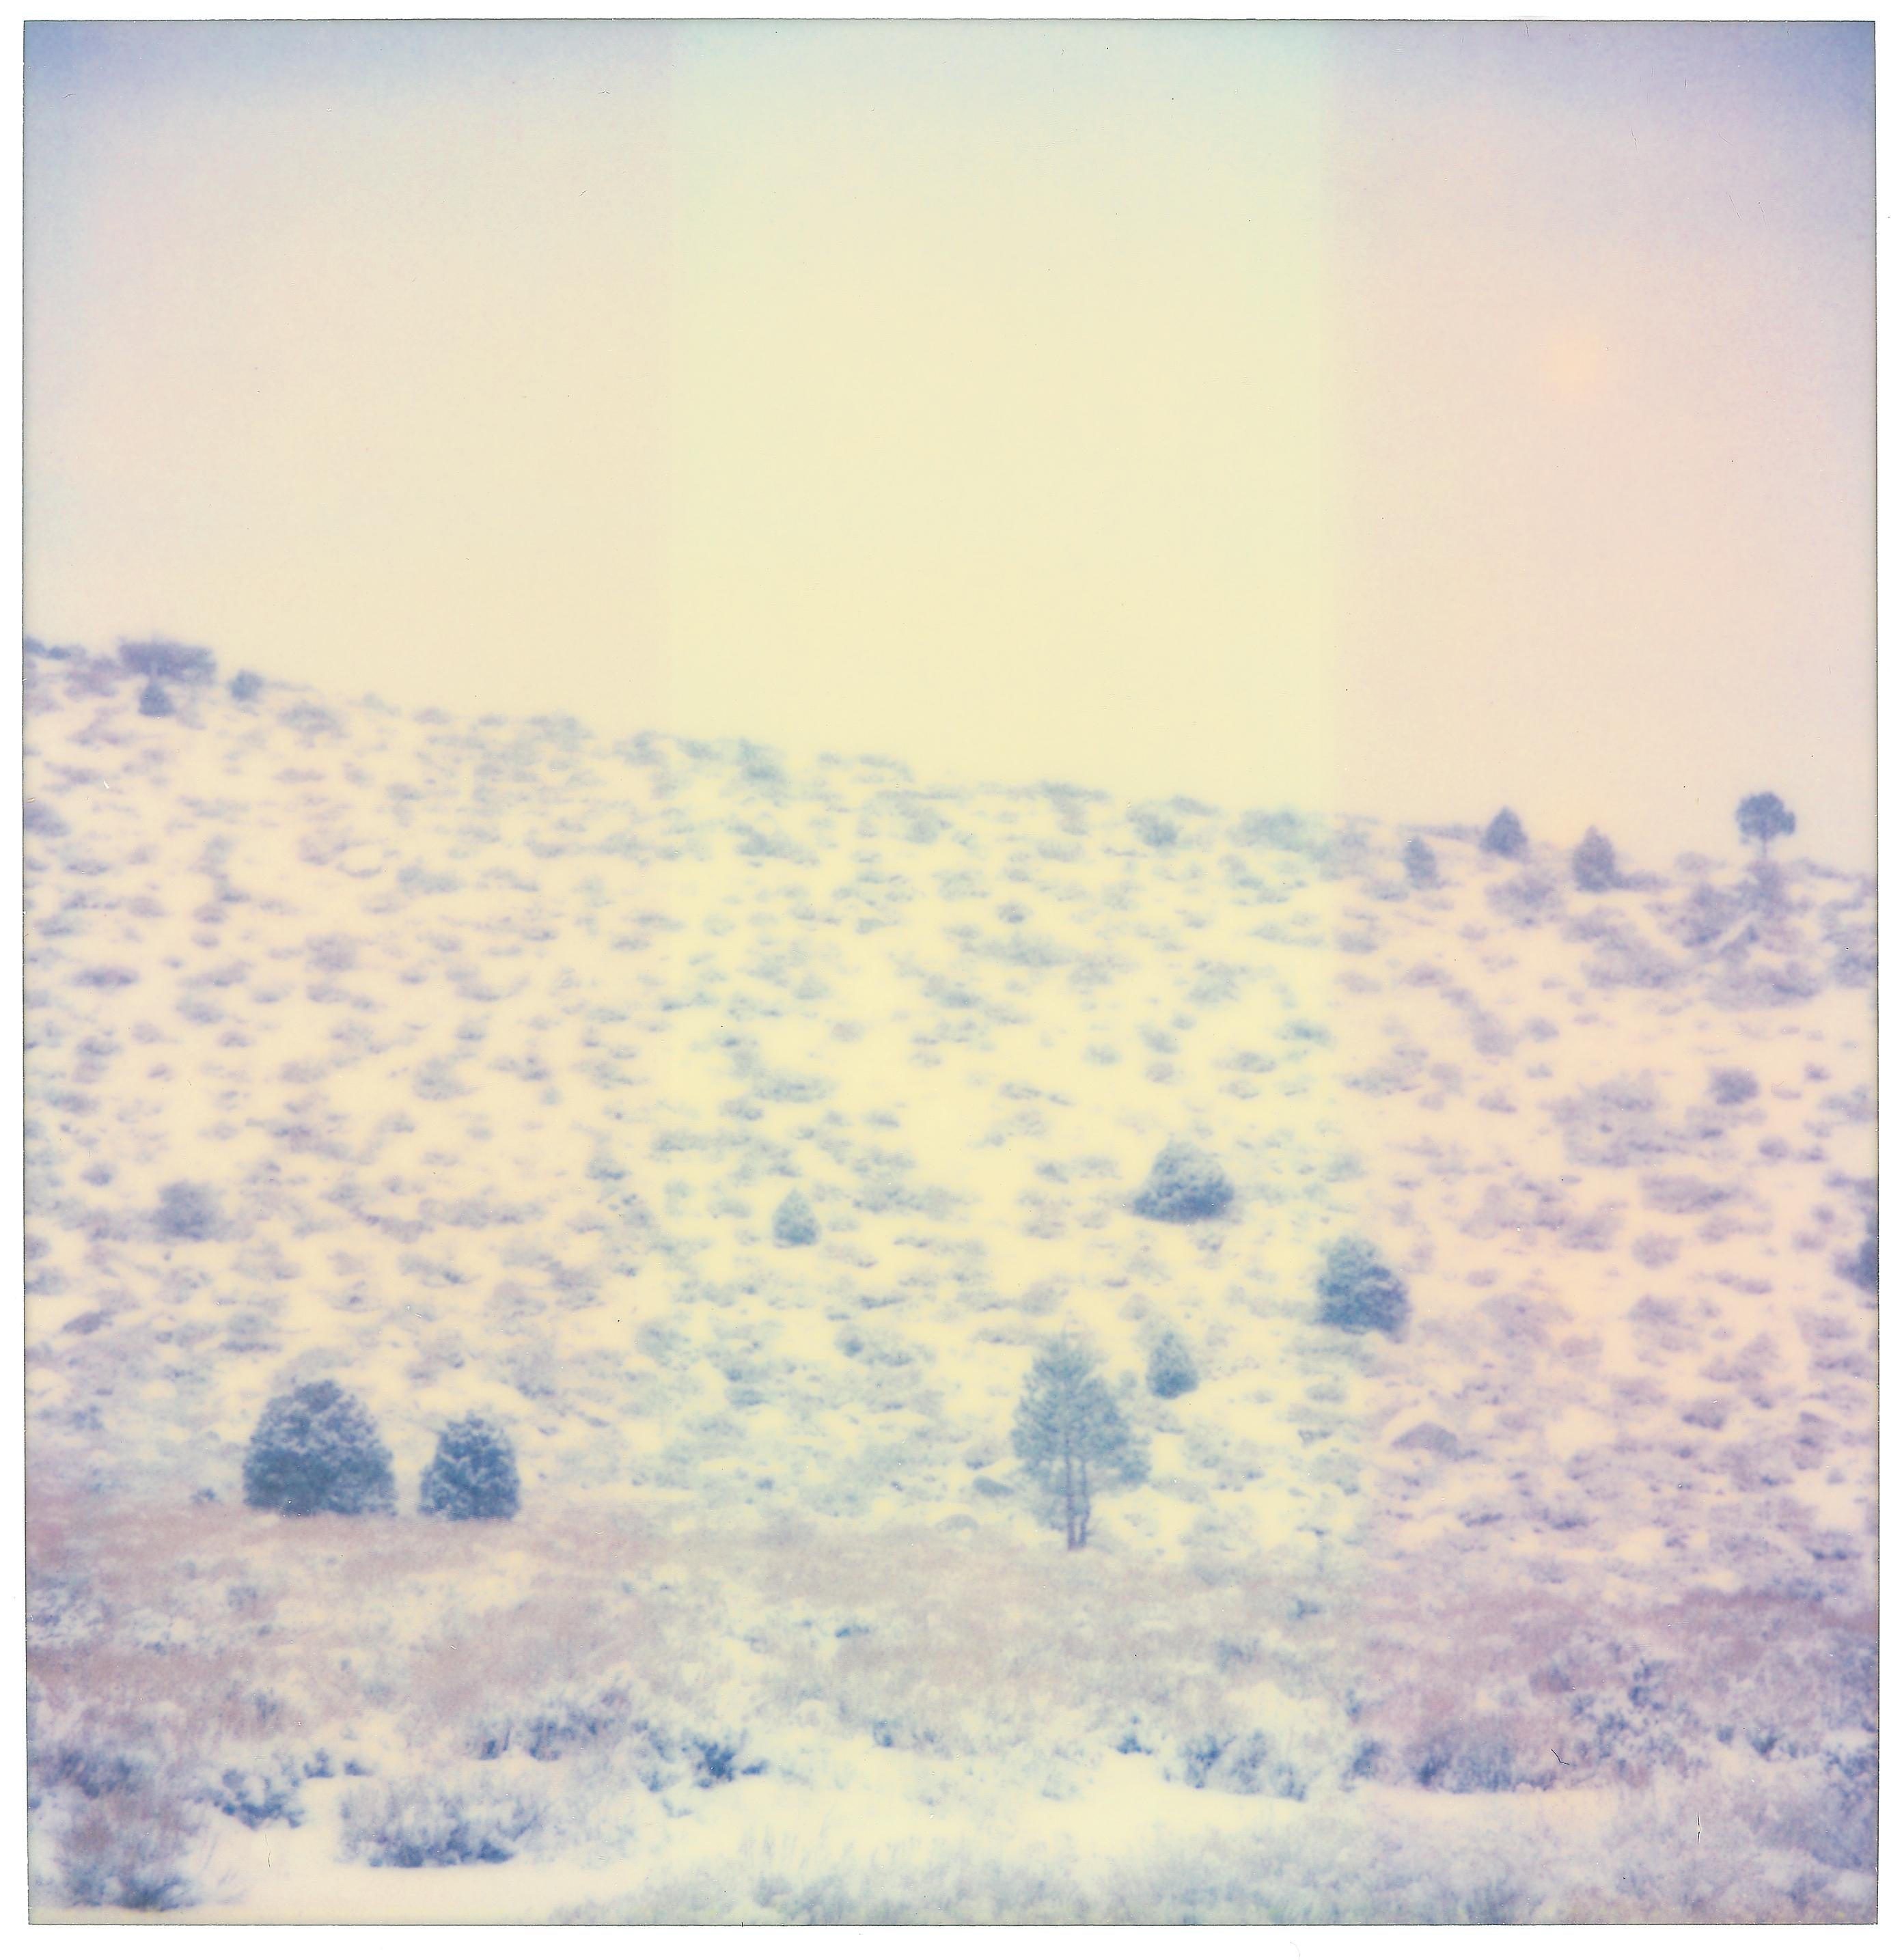 Stefanie Schneider Landscape Photograph - Purple Valley (Wastelands) - Contemporary, Landscape, Polaroid, Analog, mounted